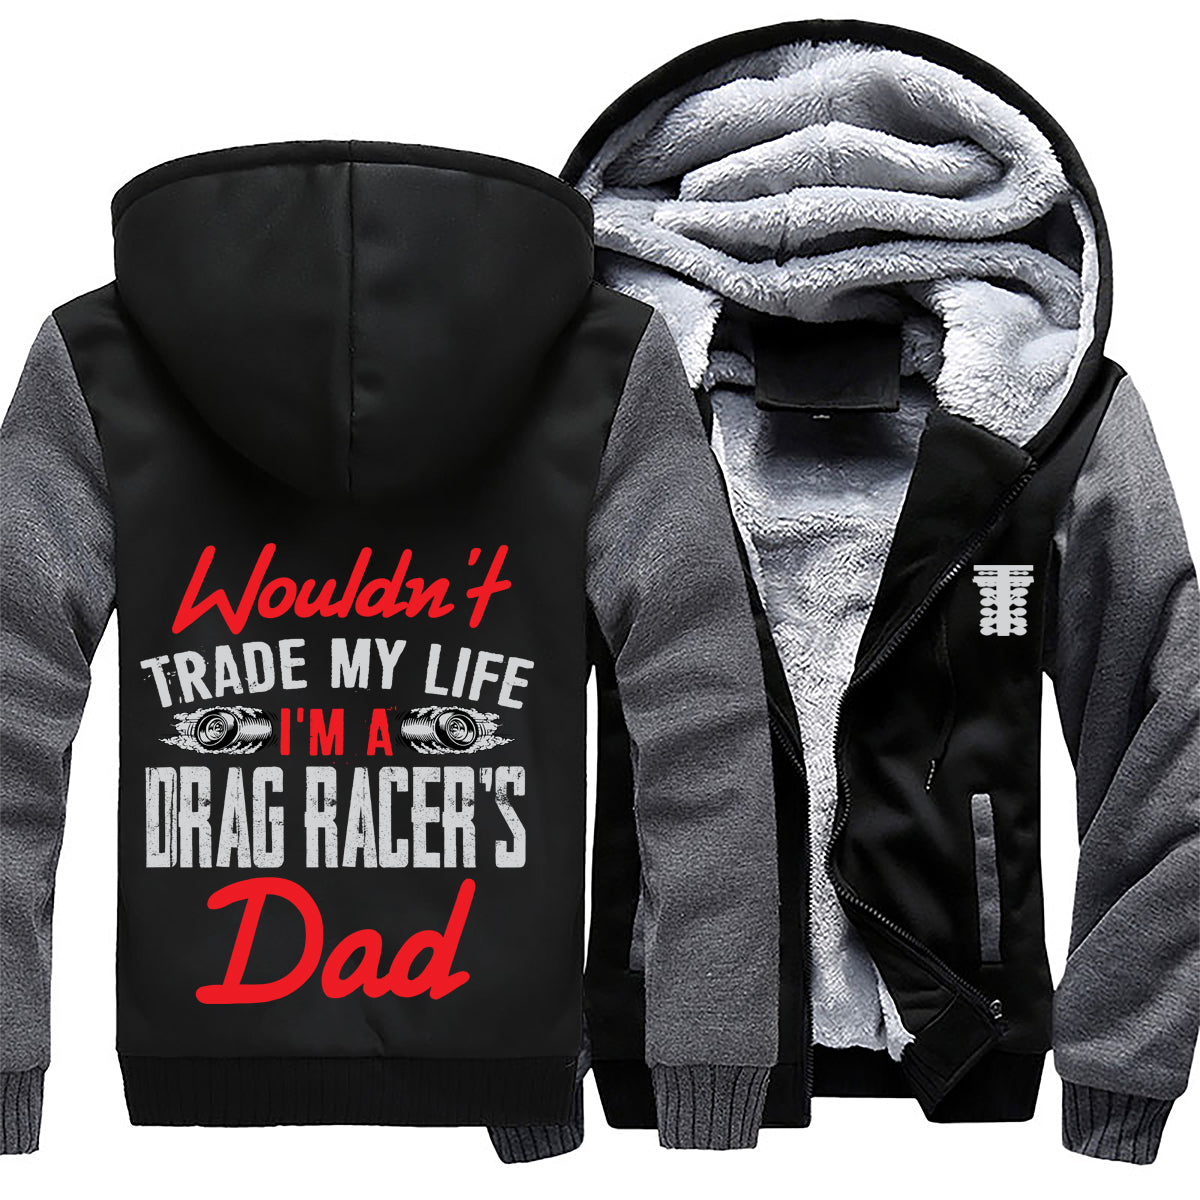 I'm A Drag Racer's Dad Jacket